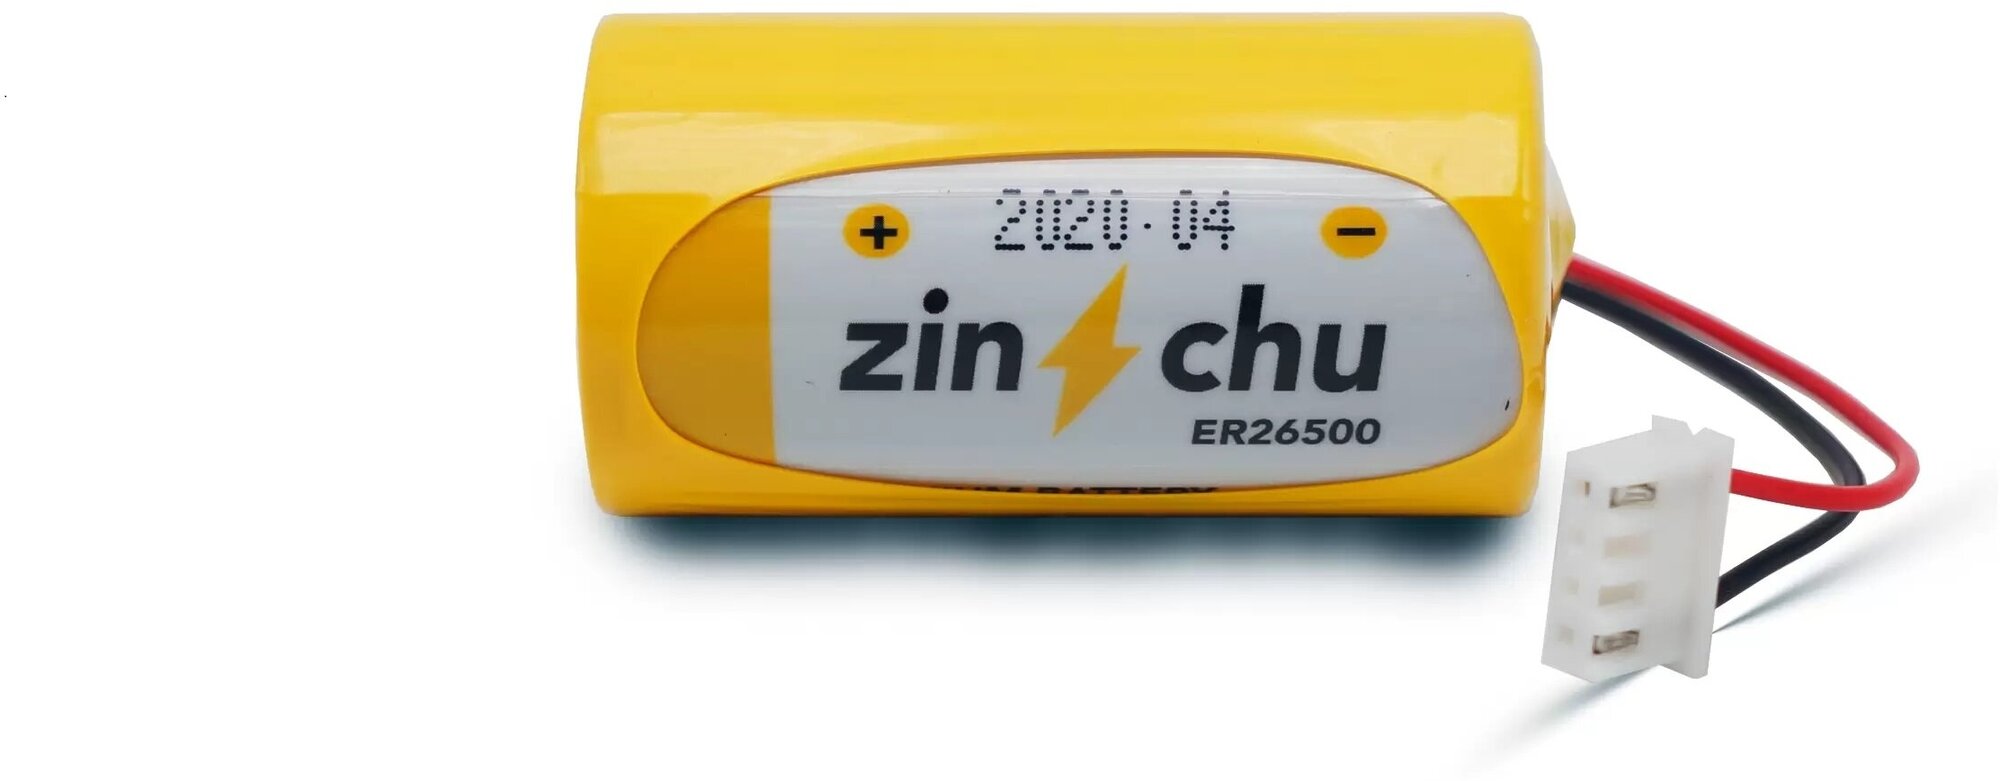 Батарейка для карат РС-80, 307, 520, Эльф 3.6V ER26500 "Zinchu"